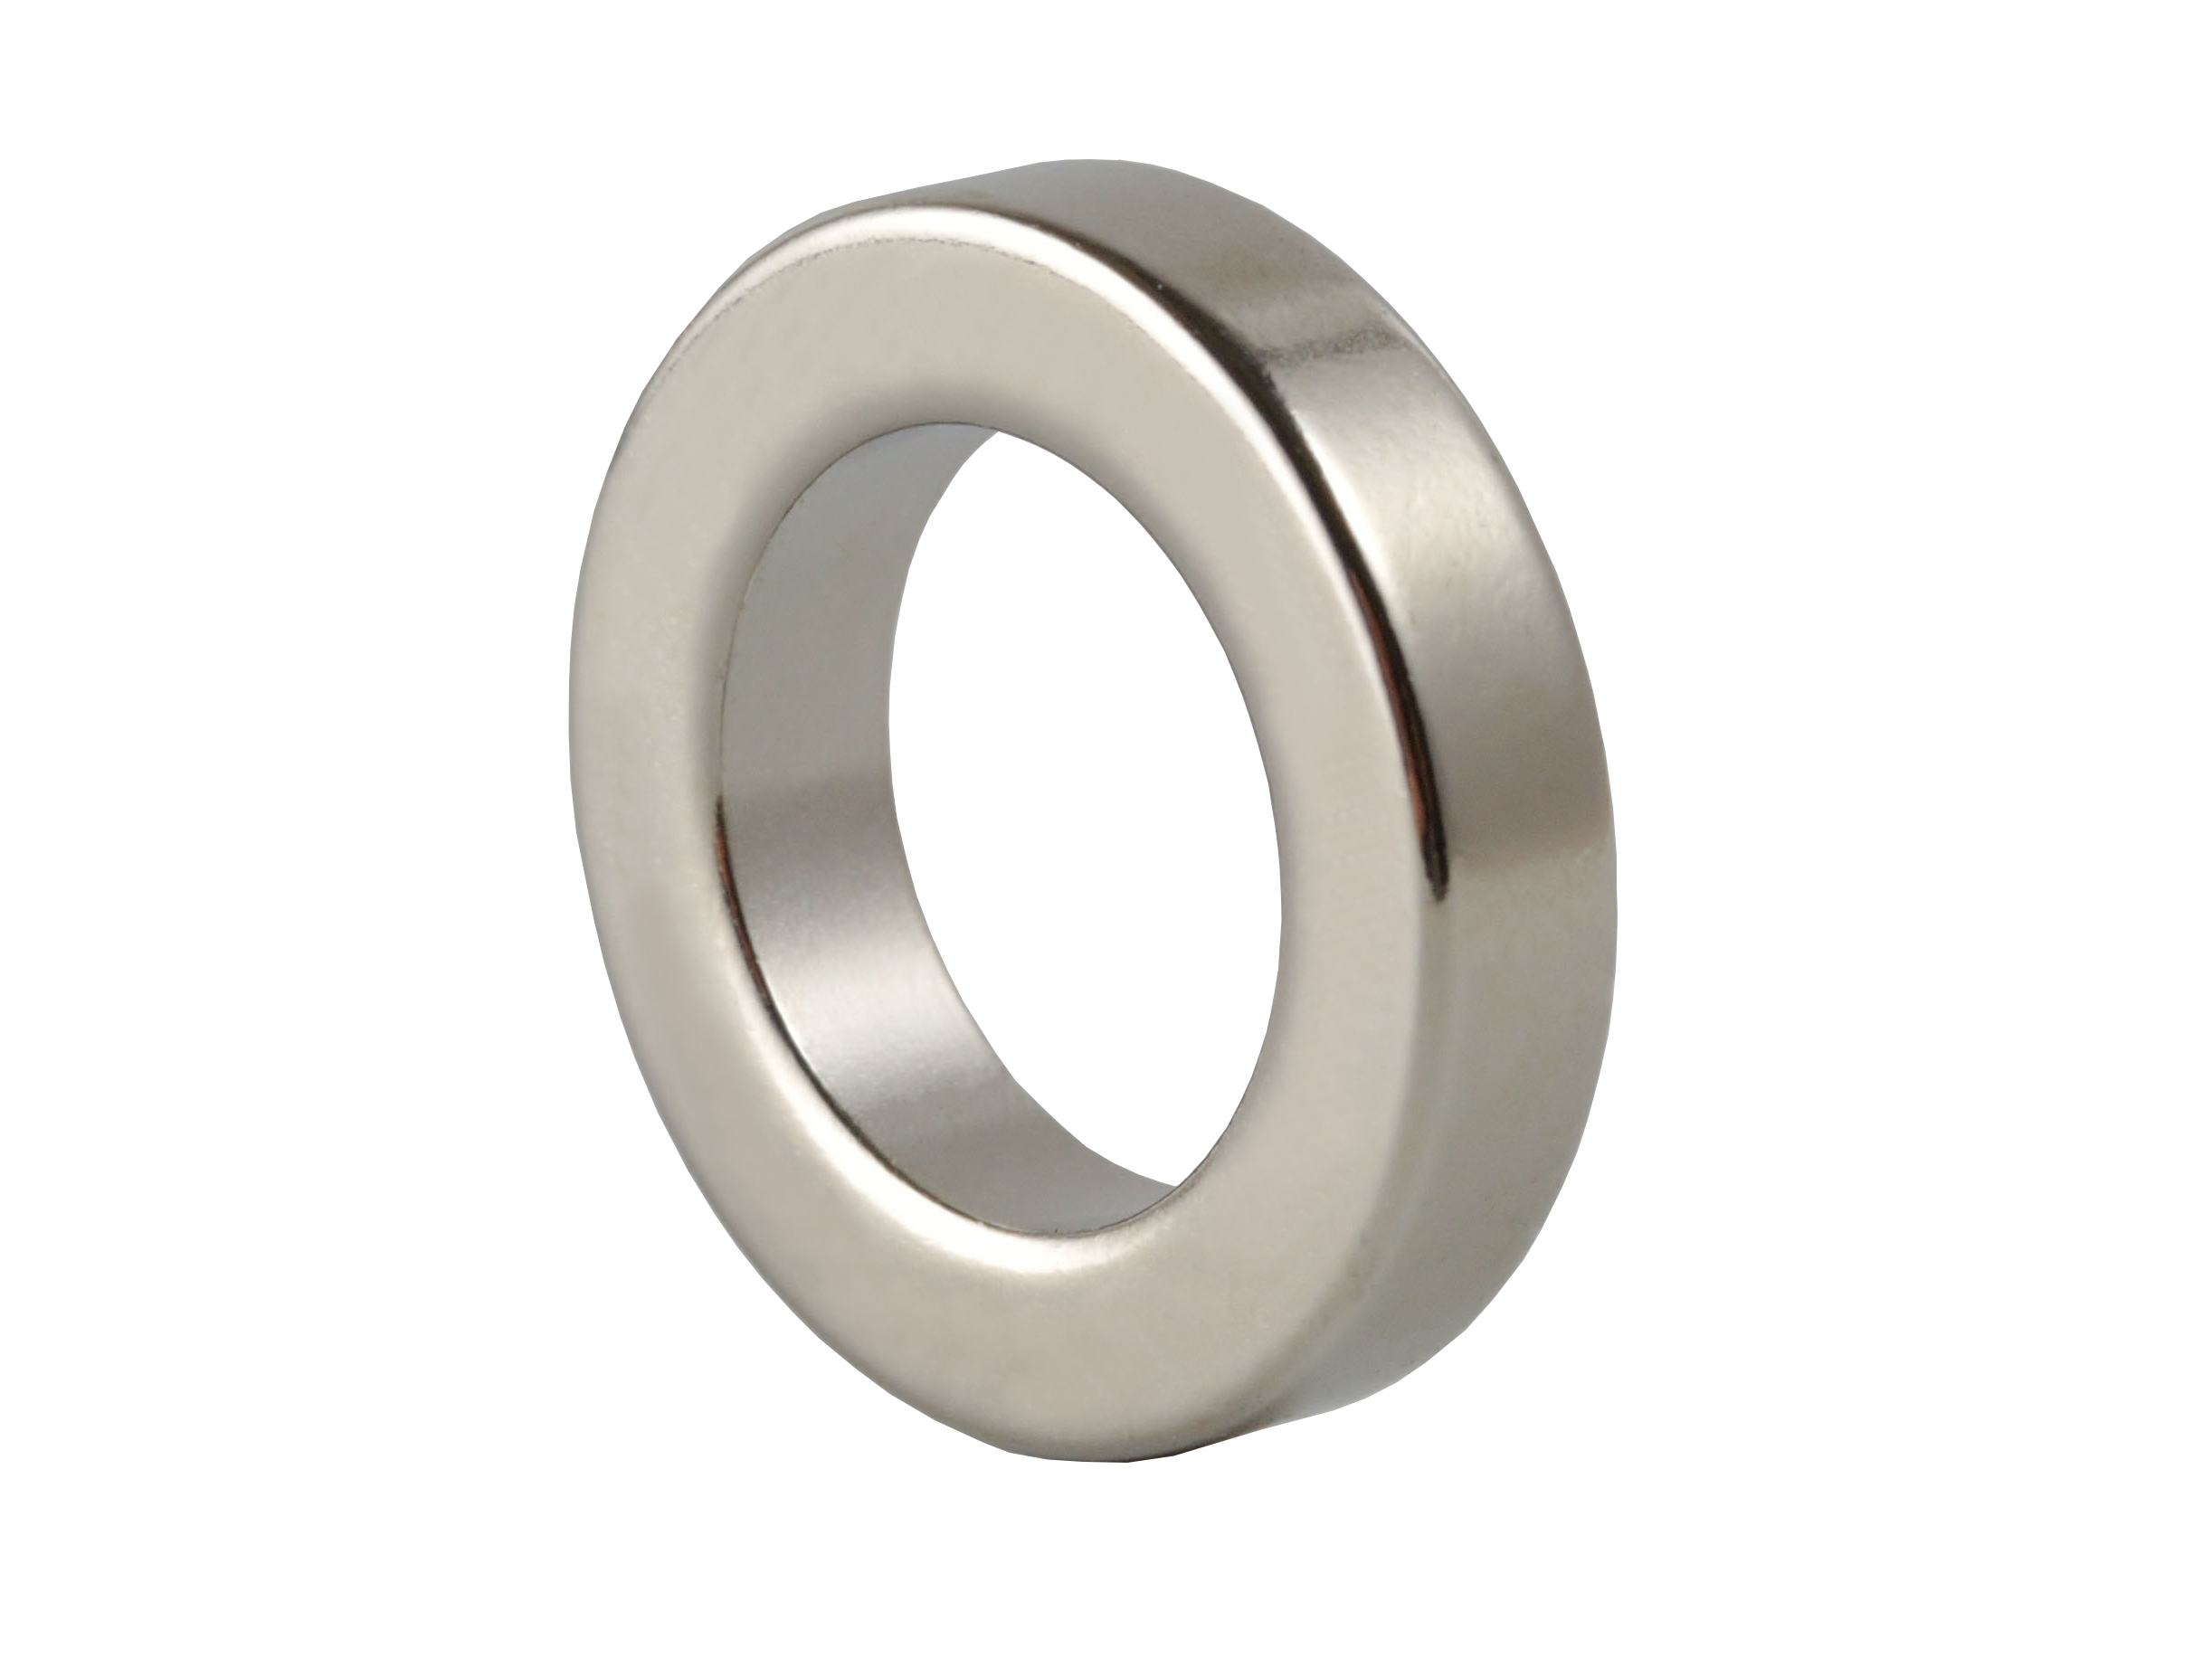 Ring‑Shaped Neodymium Magnet NOR323